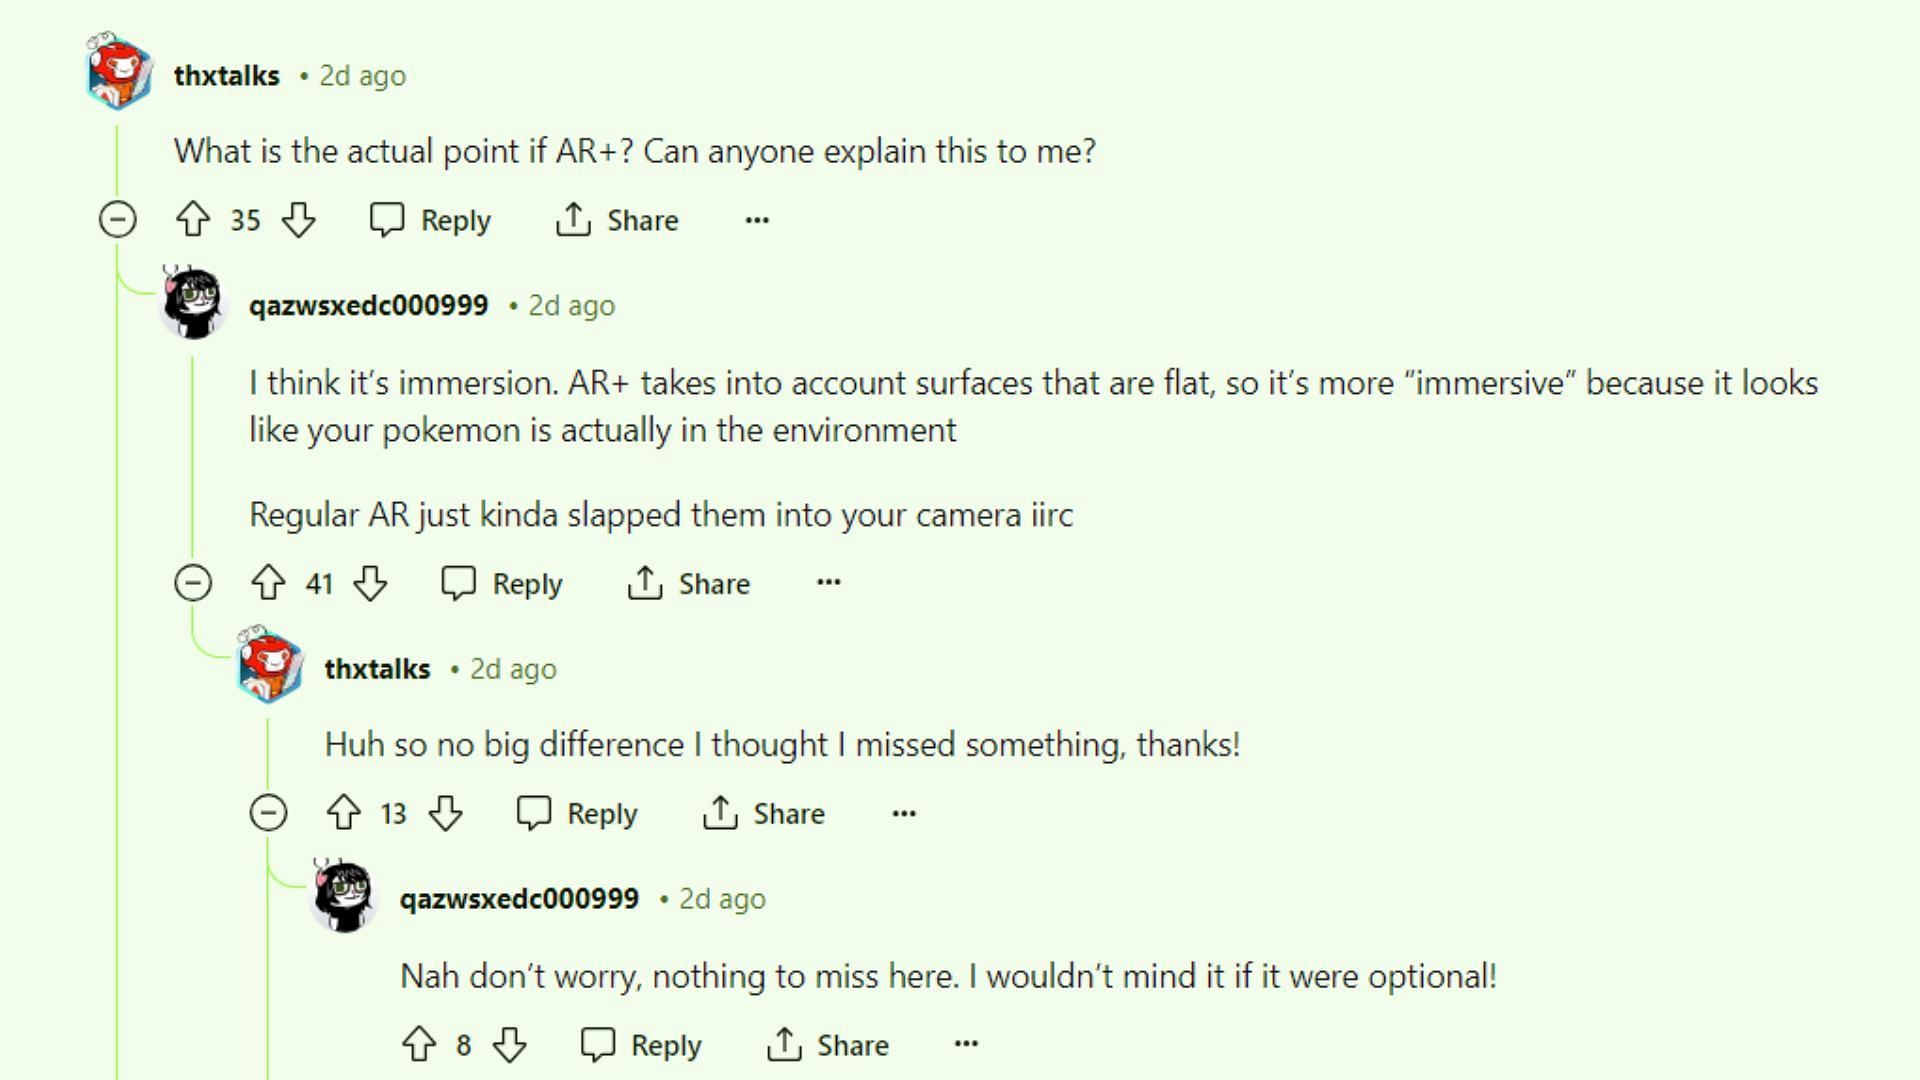 Gli utenti Reddit discutono della funzionalità AR+ (immagine tramite Reddit)